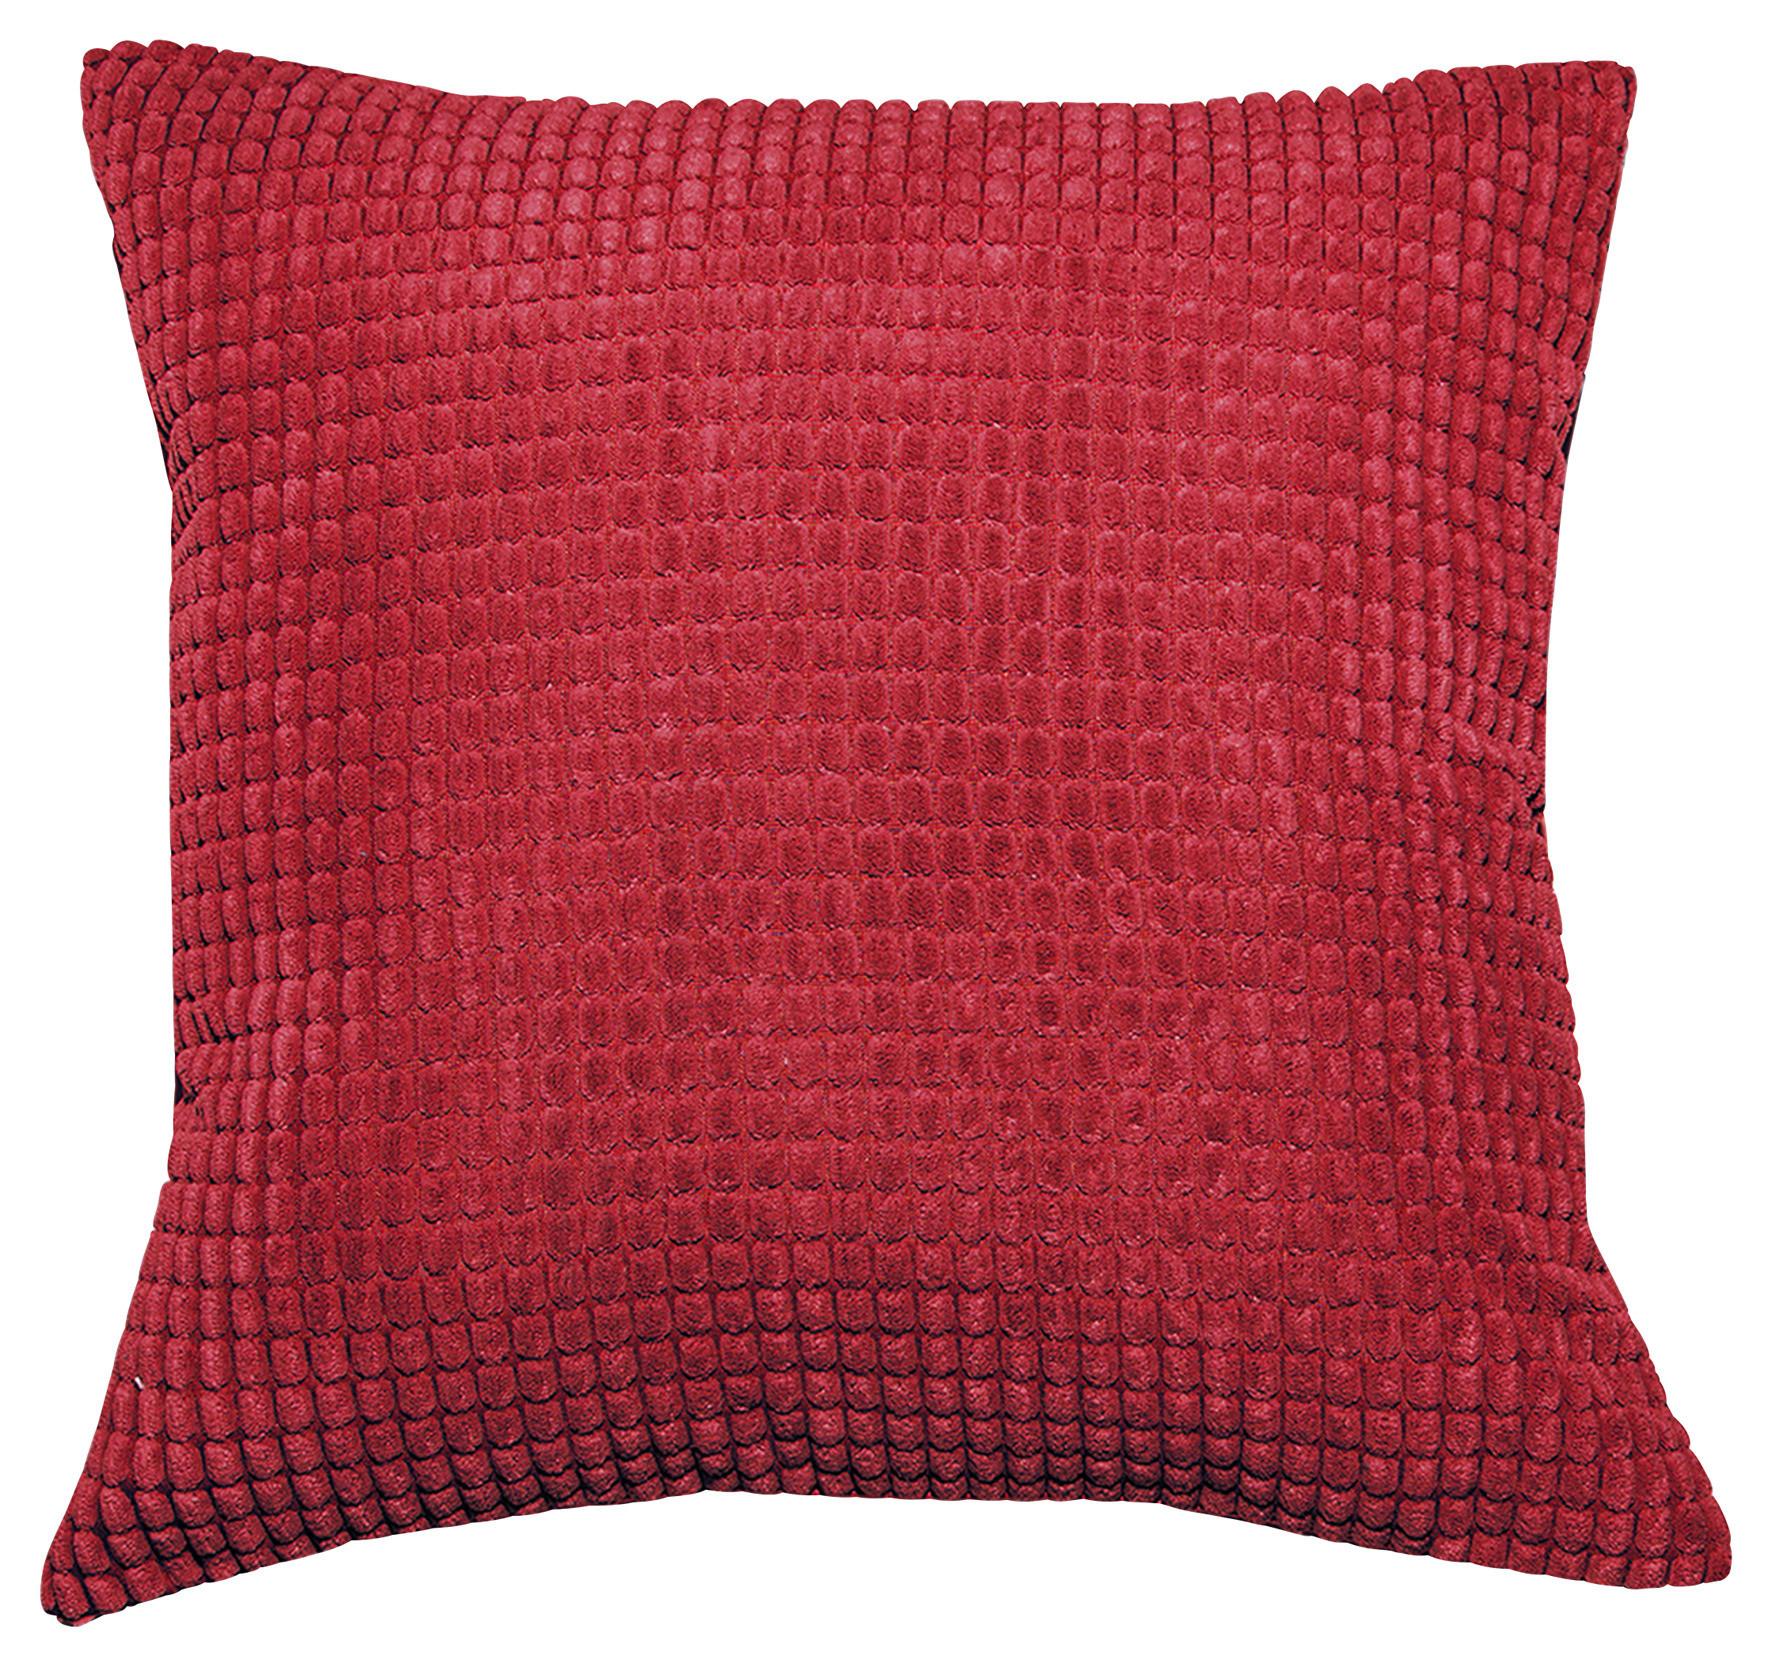 Zierkissen Halina - Rot, MODERN, Textil (45/45cm) - Luca Bessoni